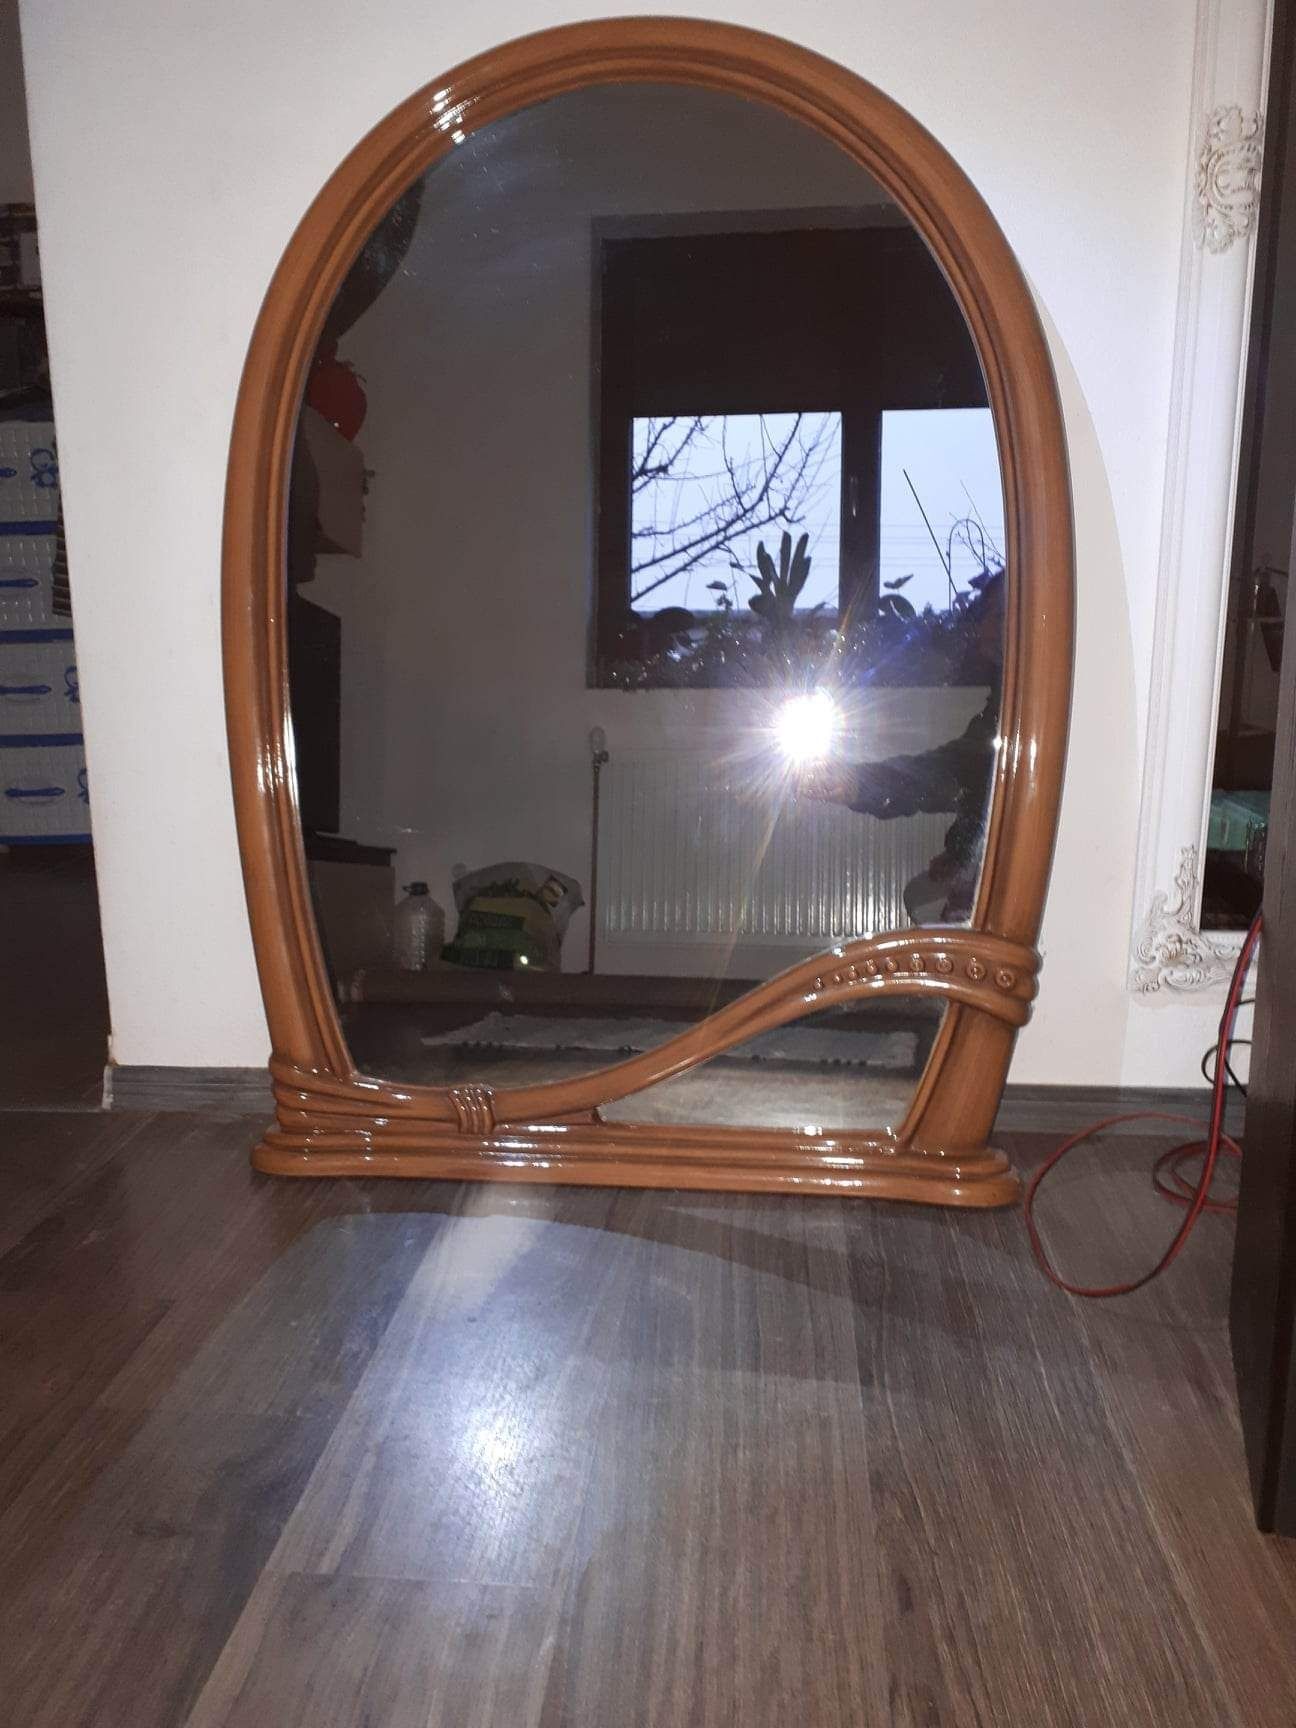 Oglinda in ramă  115cm#85cm